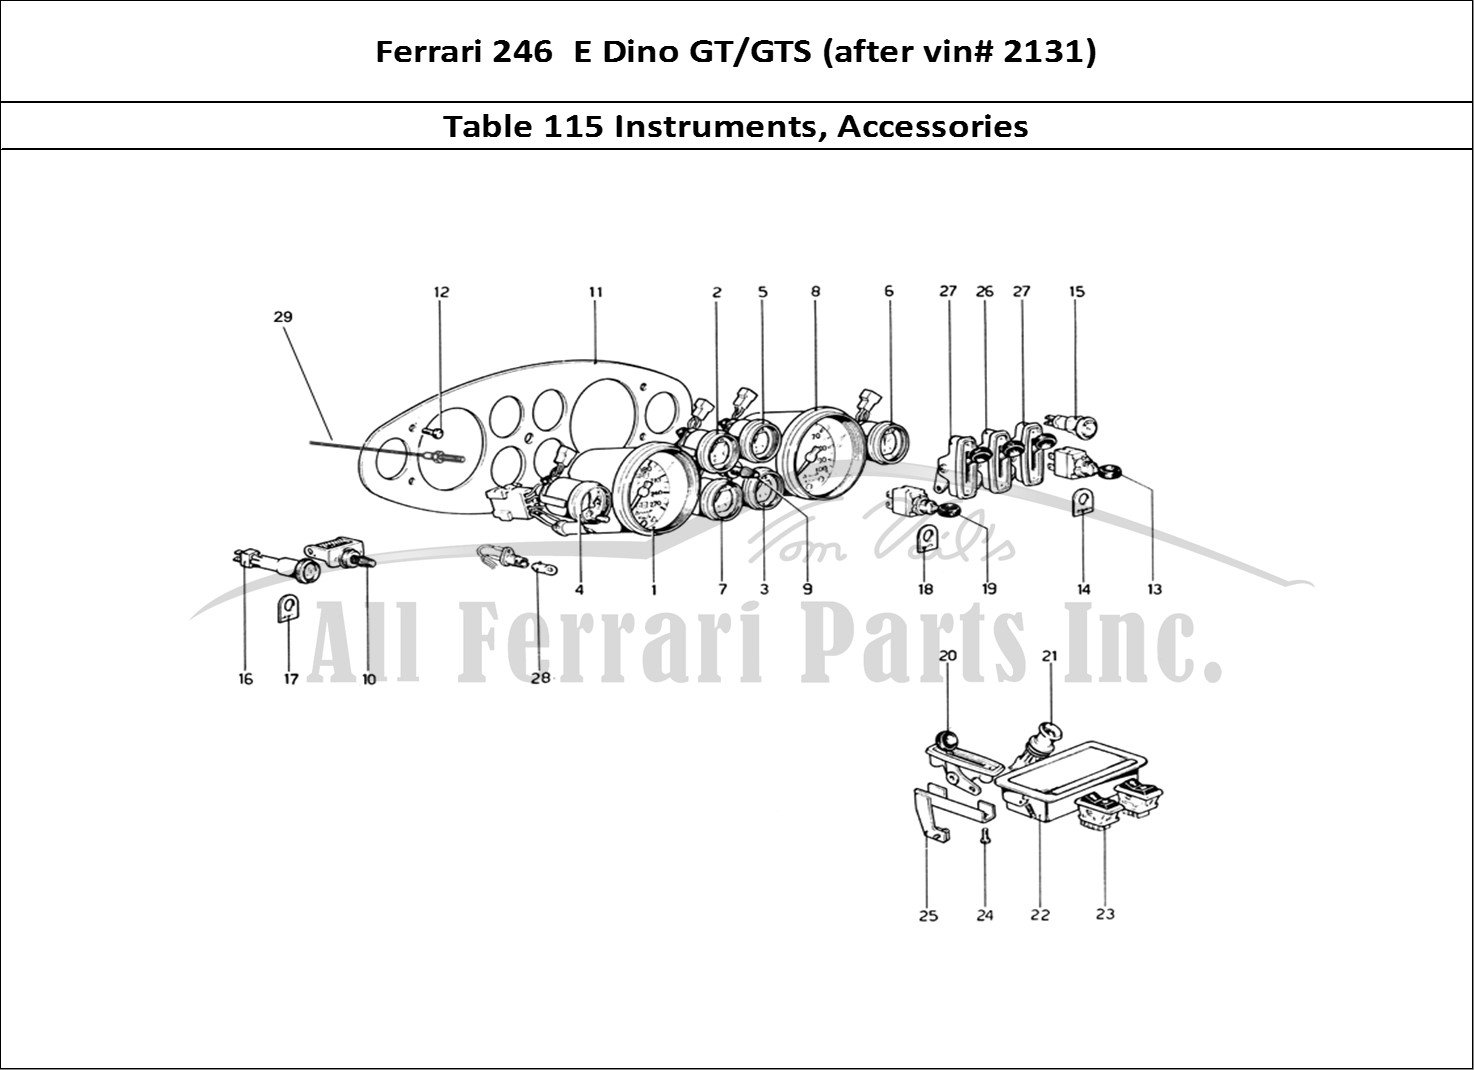 Ferrari Parts Ferrari 246 Dino (1975) Page 115 Instruments and Accessori